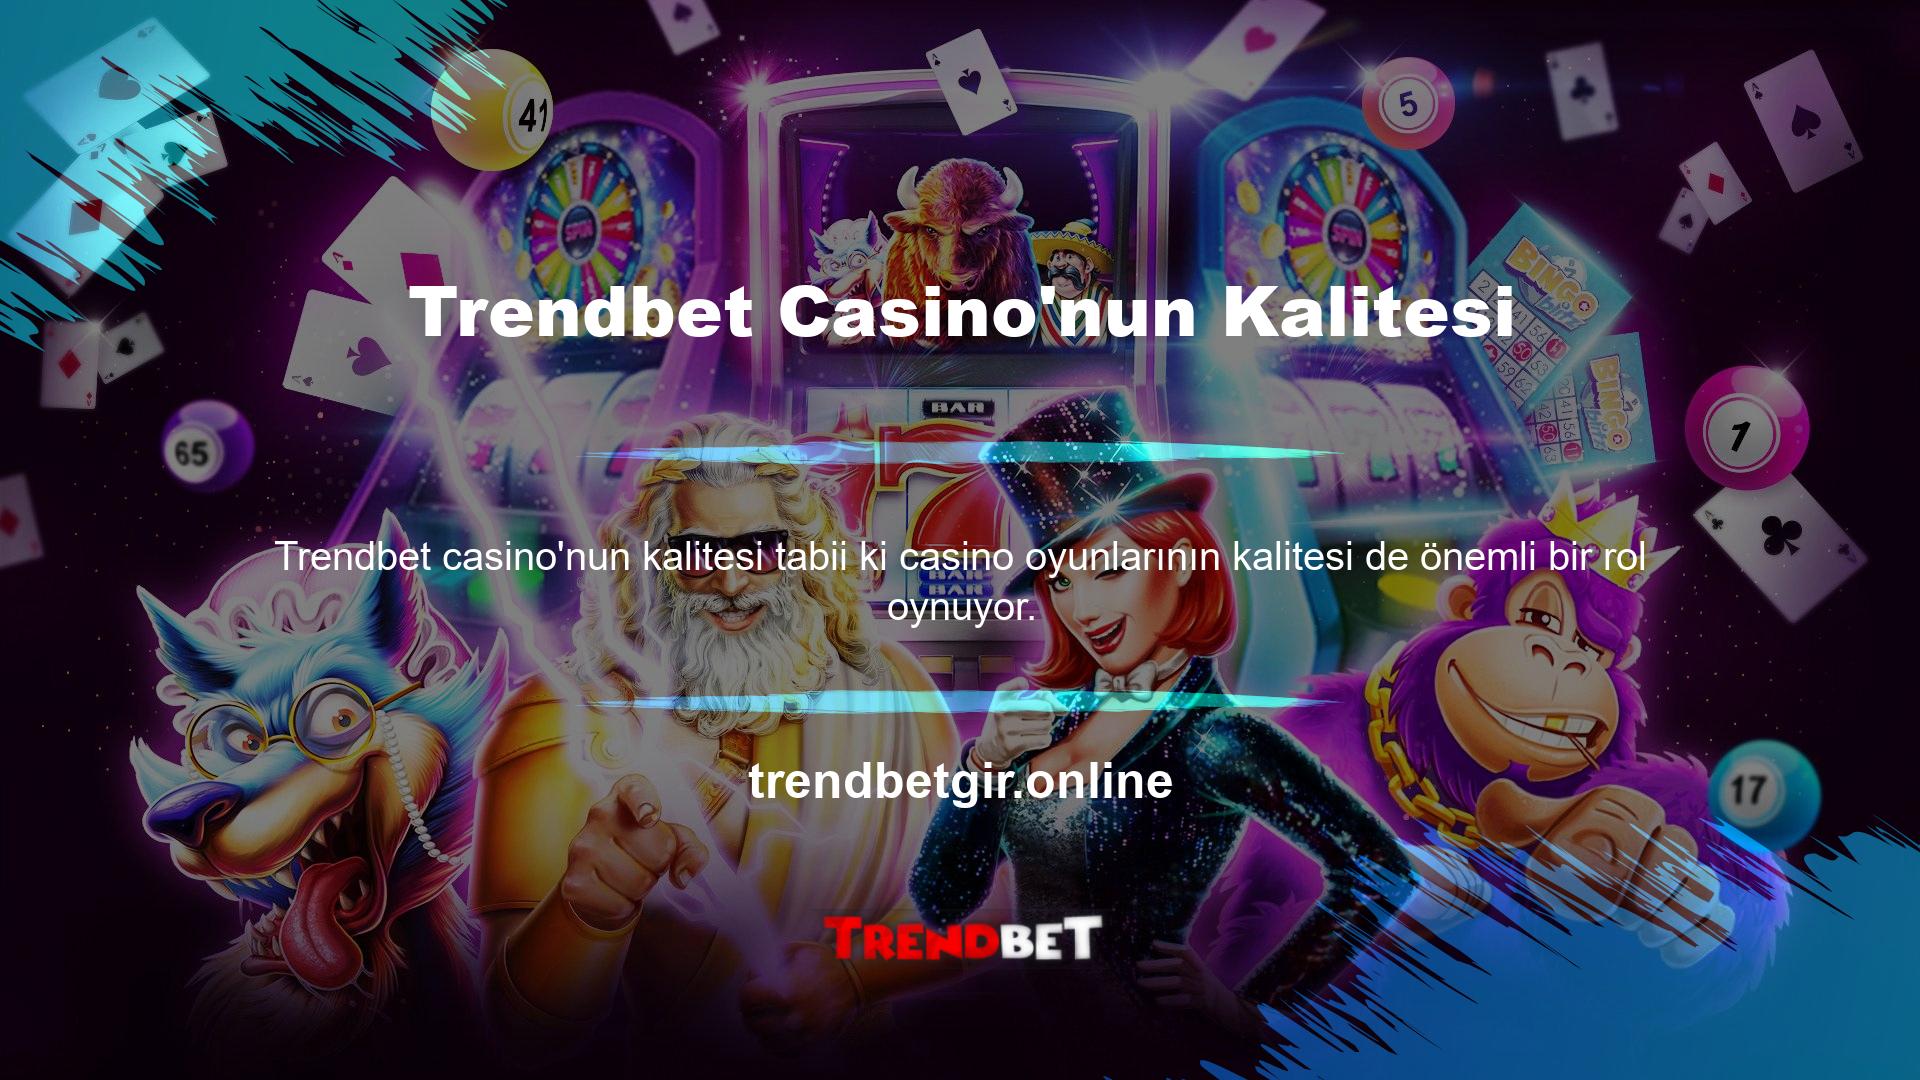 Bu oyun türünün kalitesi göz önüne alındığında Trendbet Casino kalitesinin iyi olduğunu söyleyebilirim